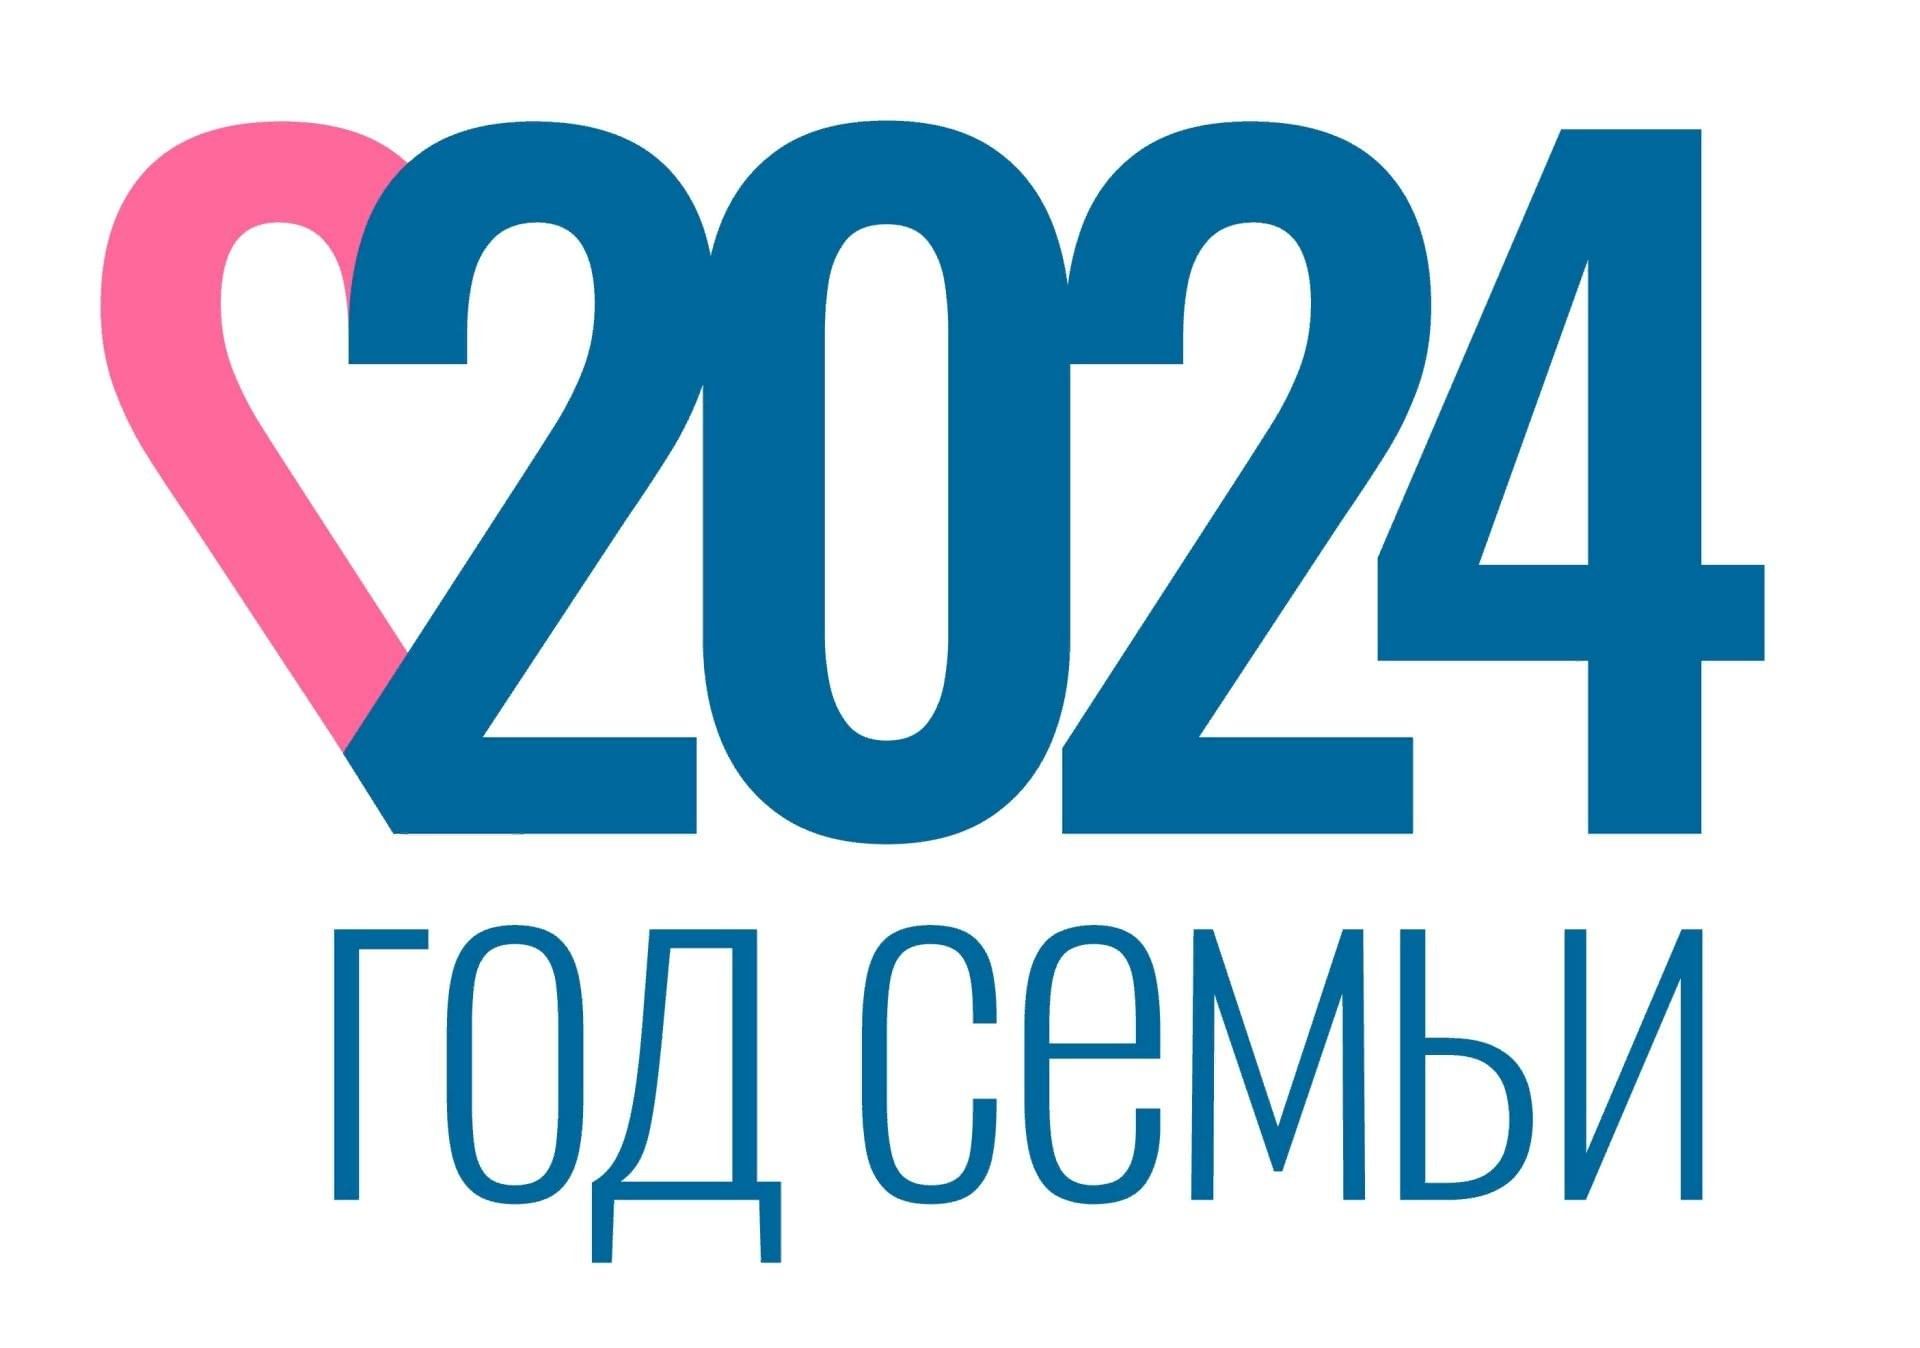 Утвержден официальный логотип 2024 года семьи.